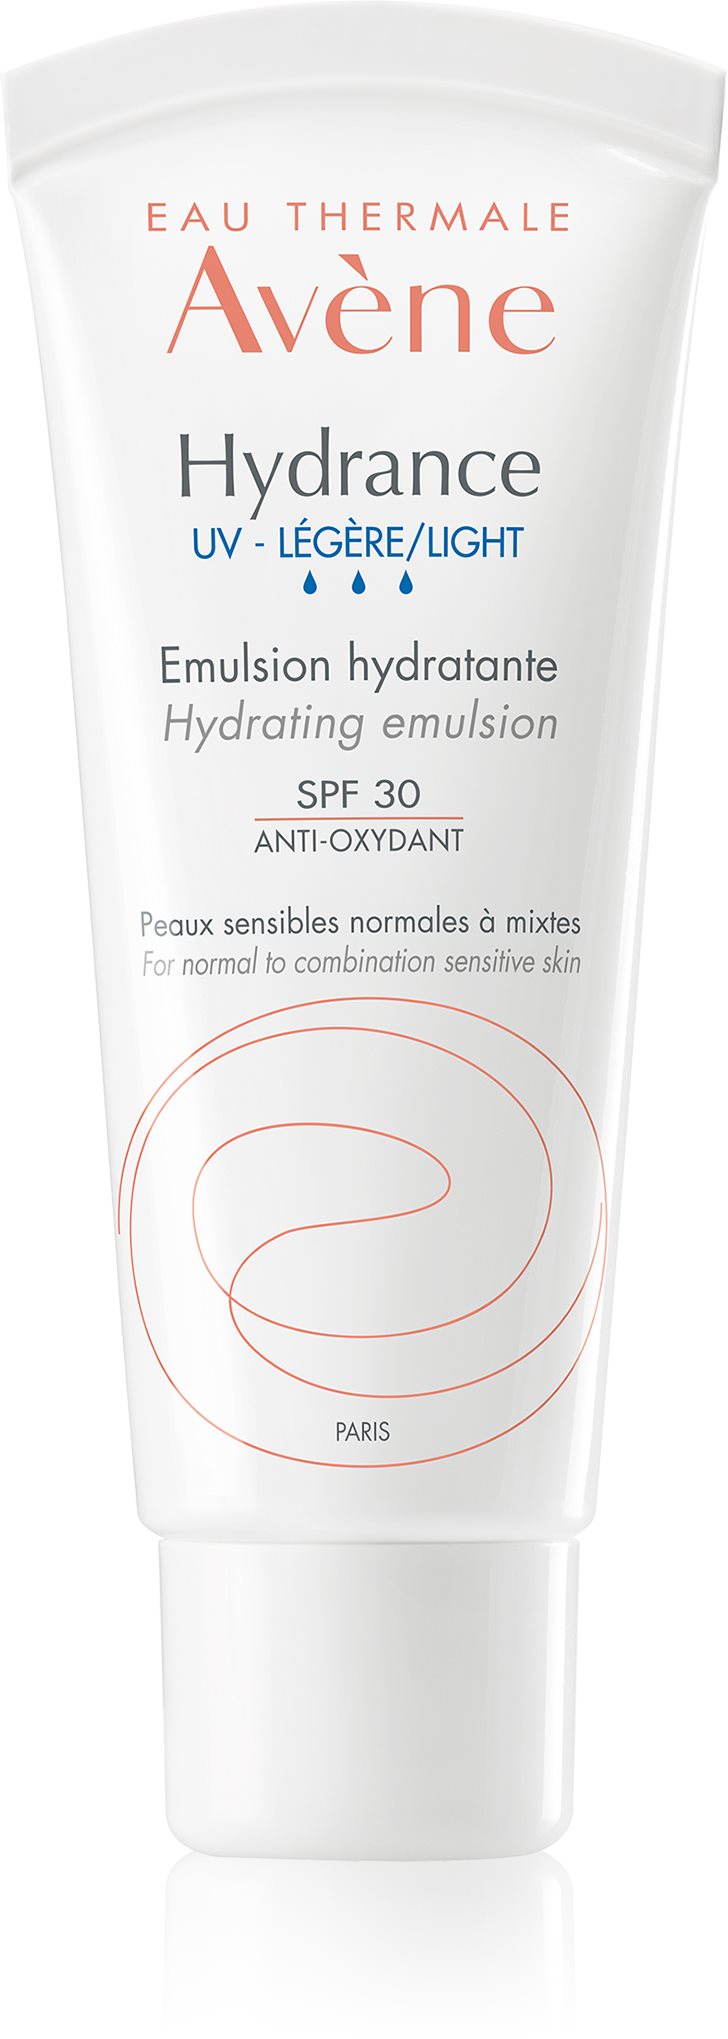 AVENE Hydrance Light hidratáló emulzió SPF 30 normál és kombinált, dehidratált, érzékeny bőrre